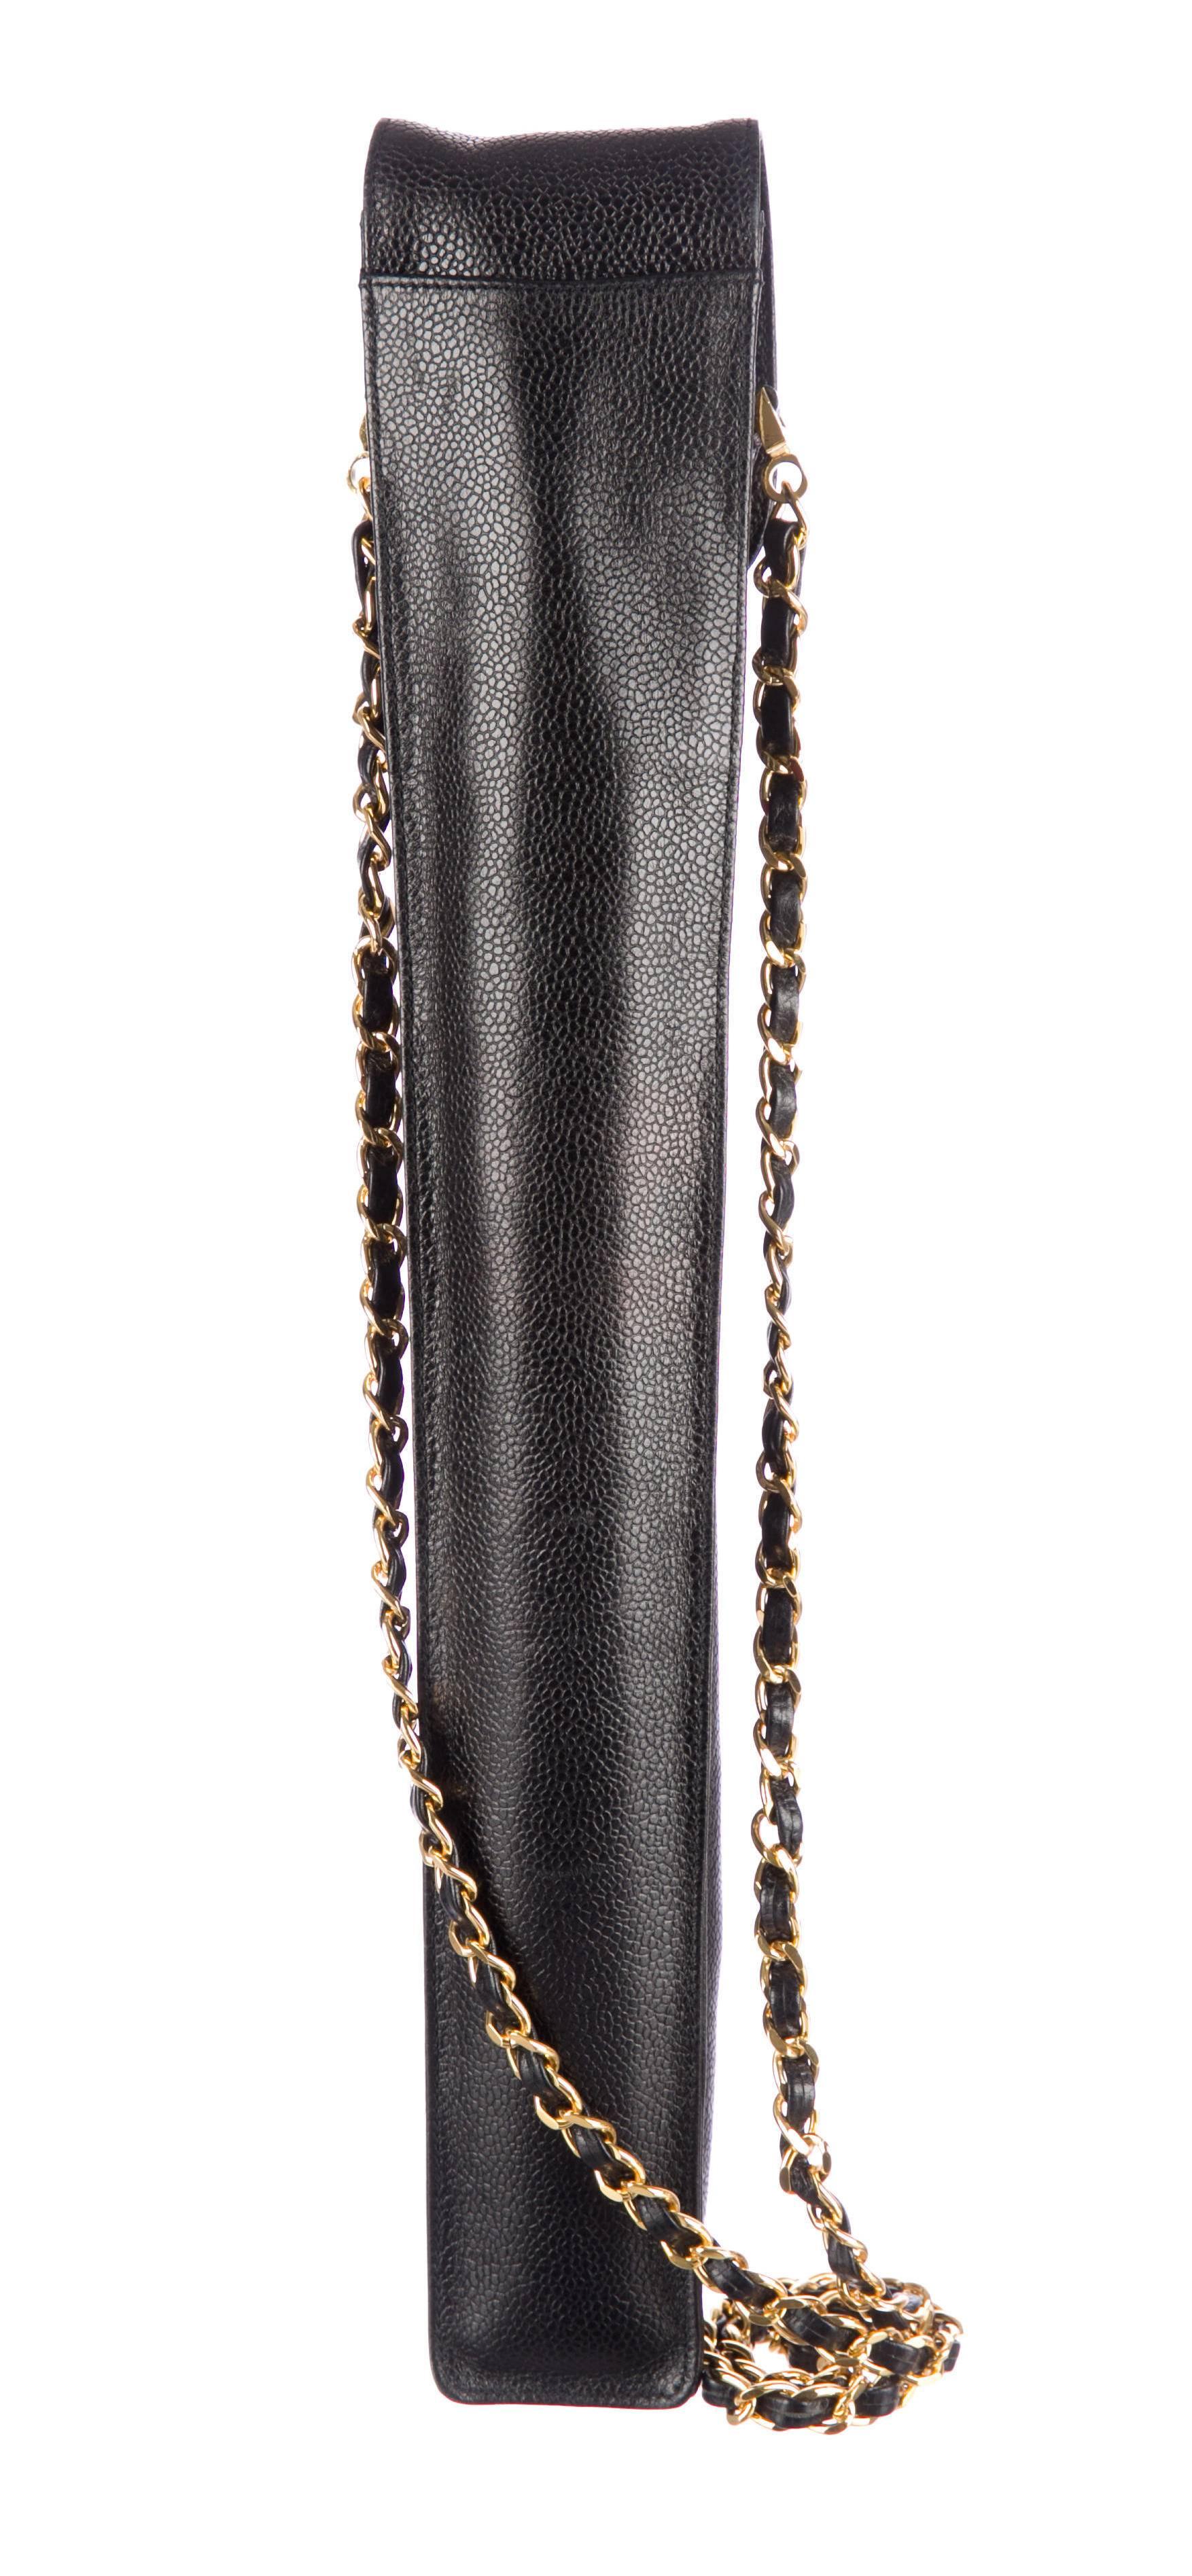 Women's Chanel Black Caviar Leather Umbrella Case, 1995 For Sale